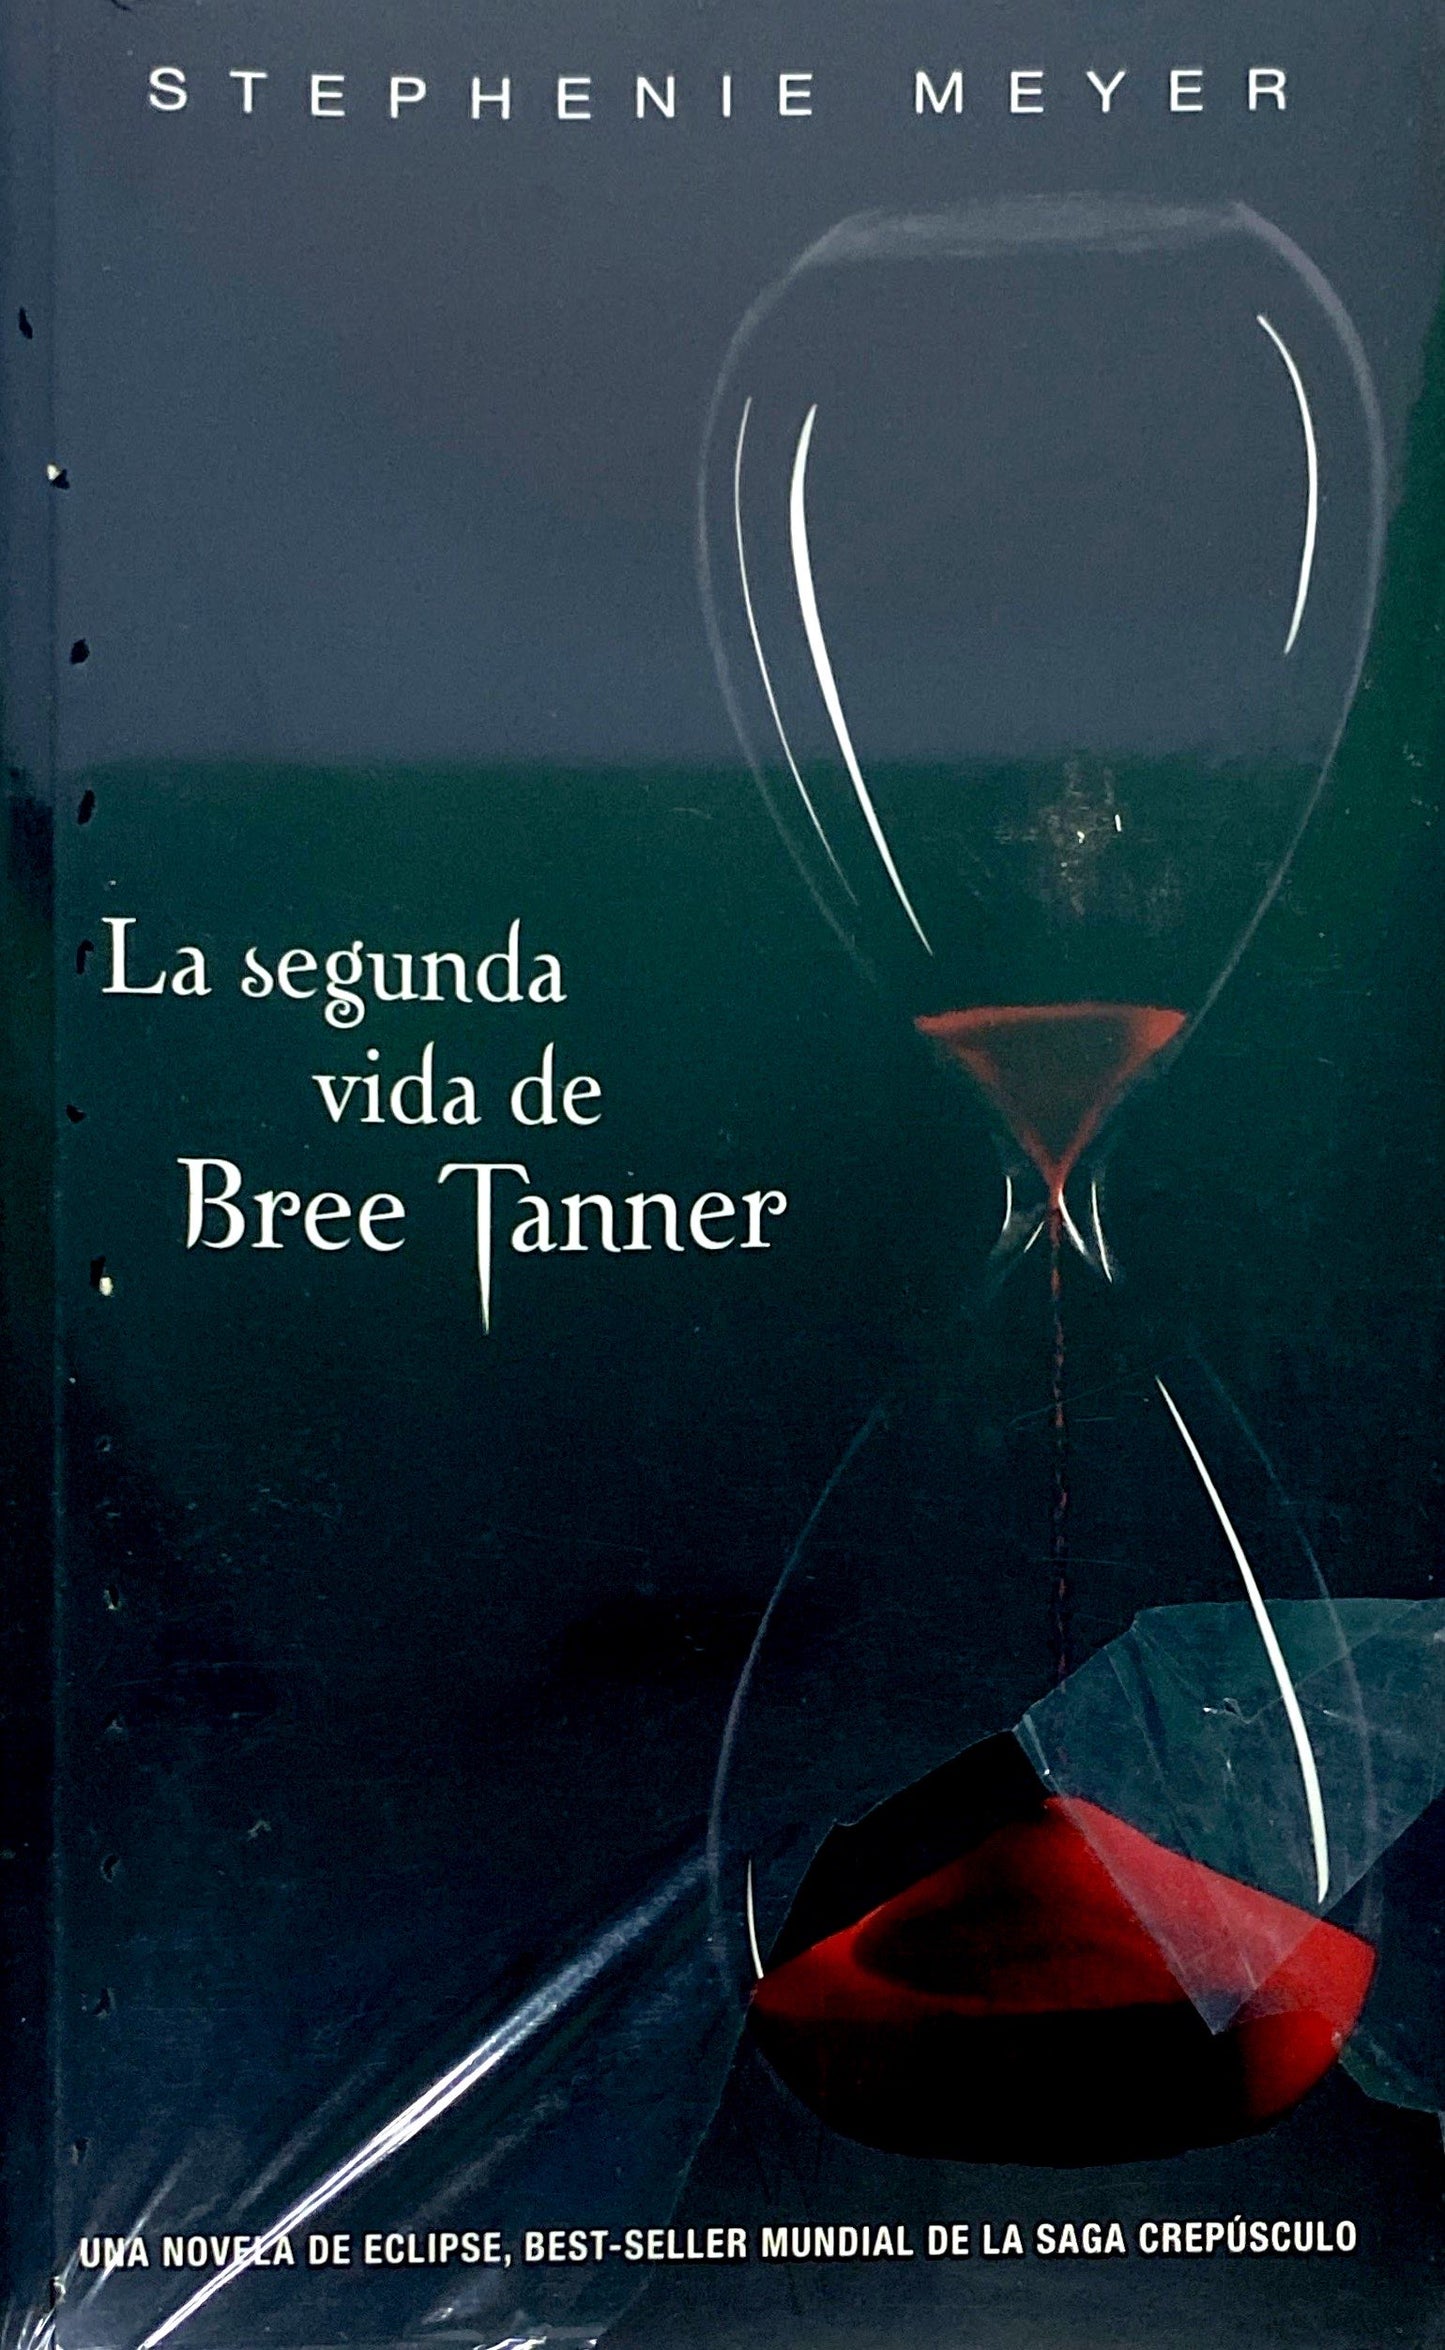 La segunda vida de bree tanner | Stephanie Meyer